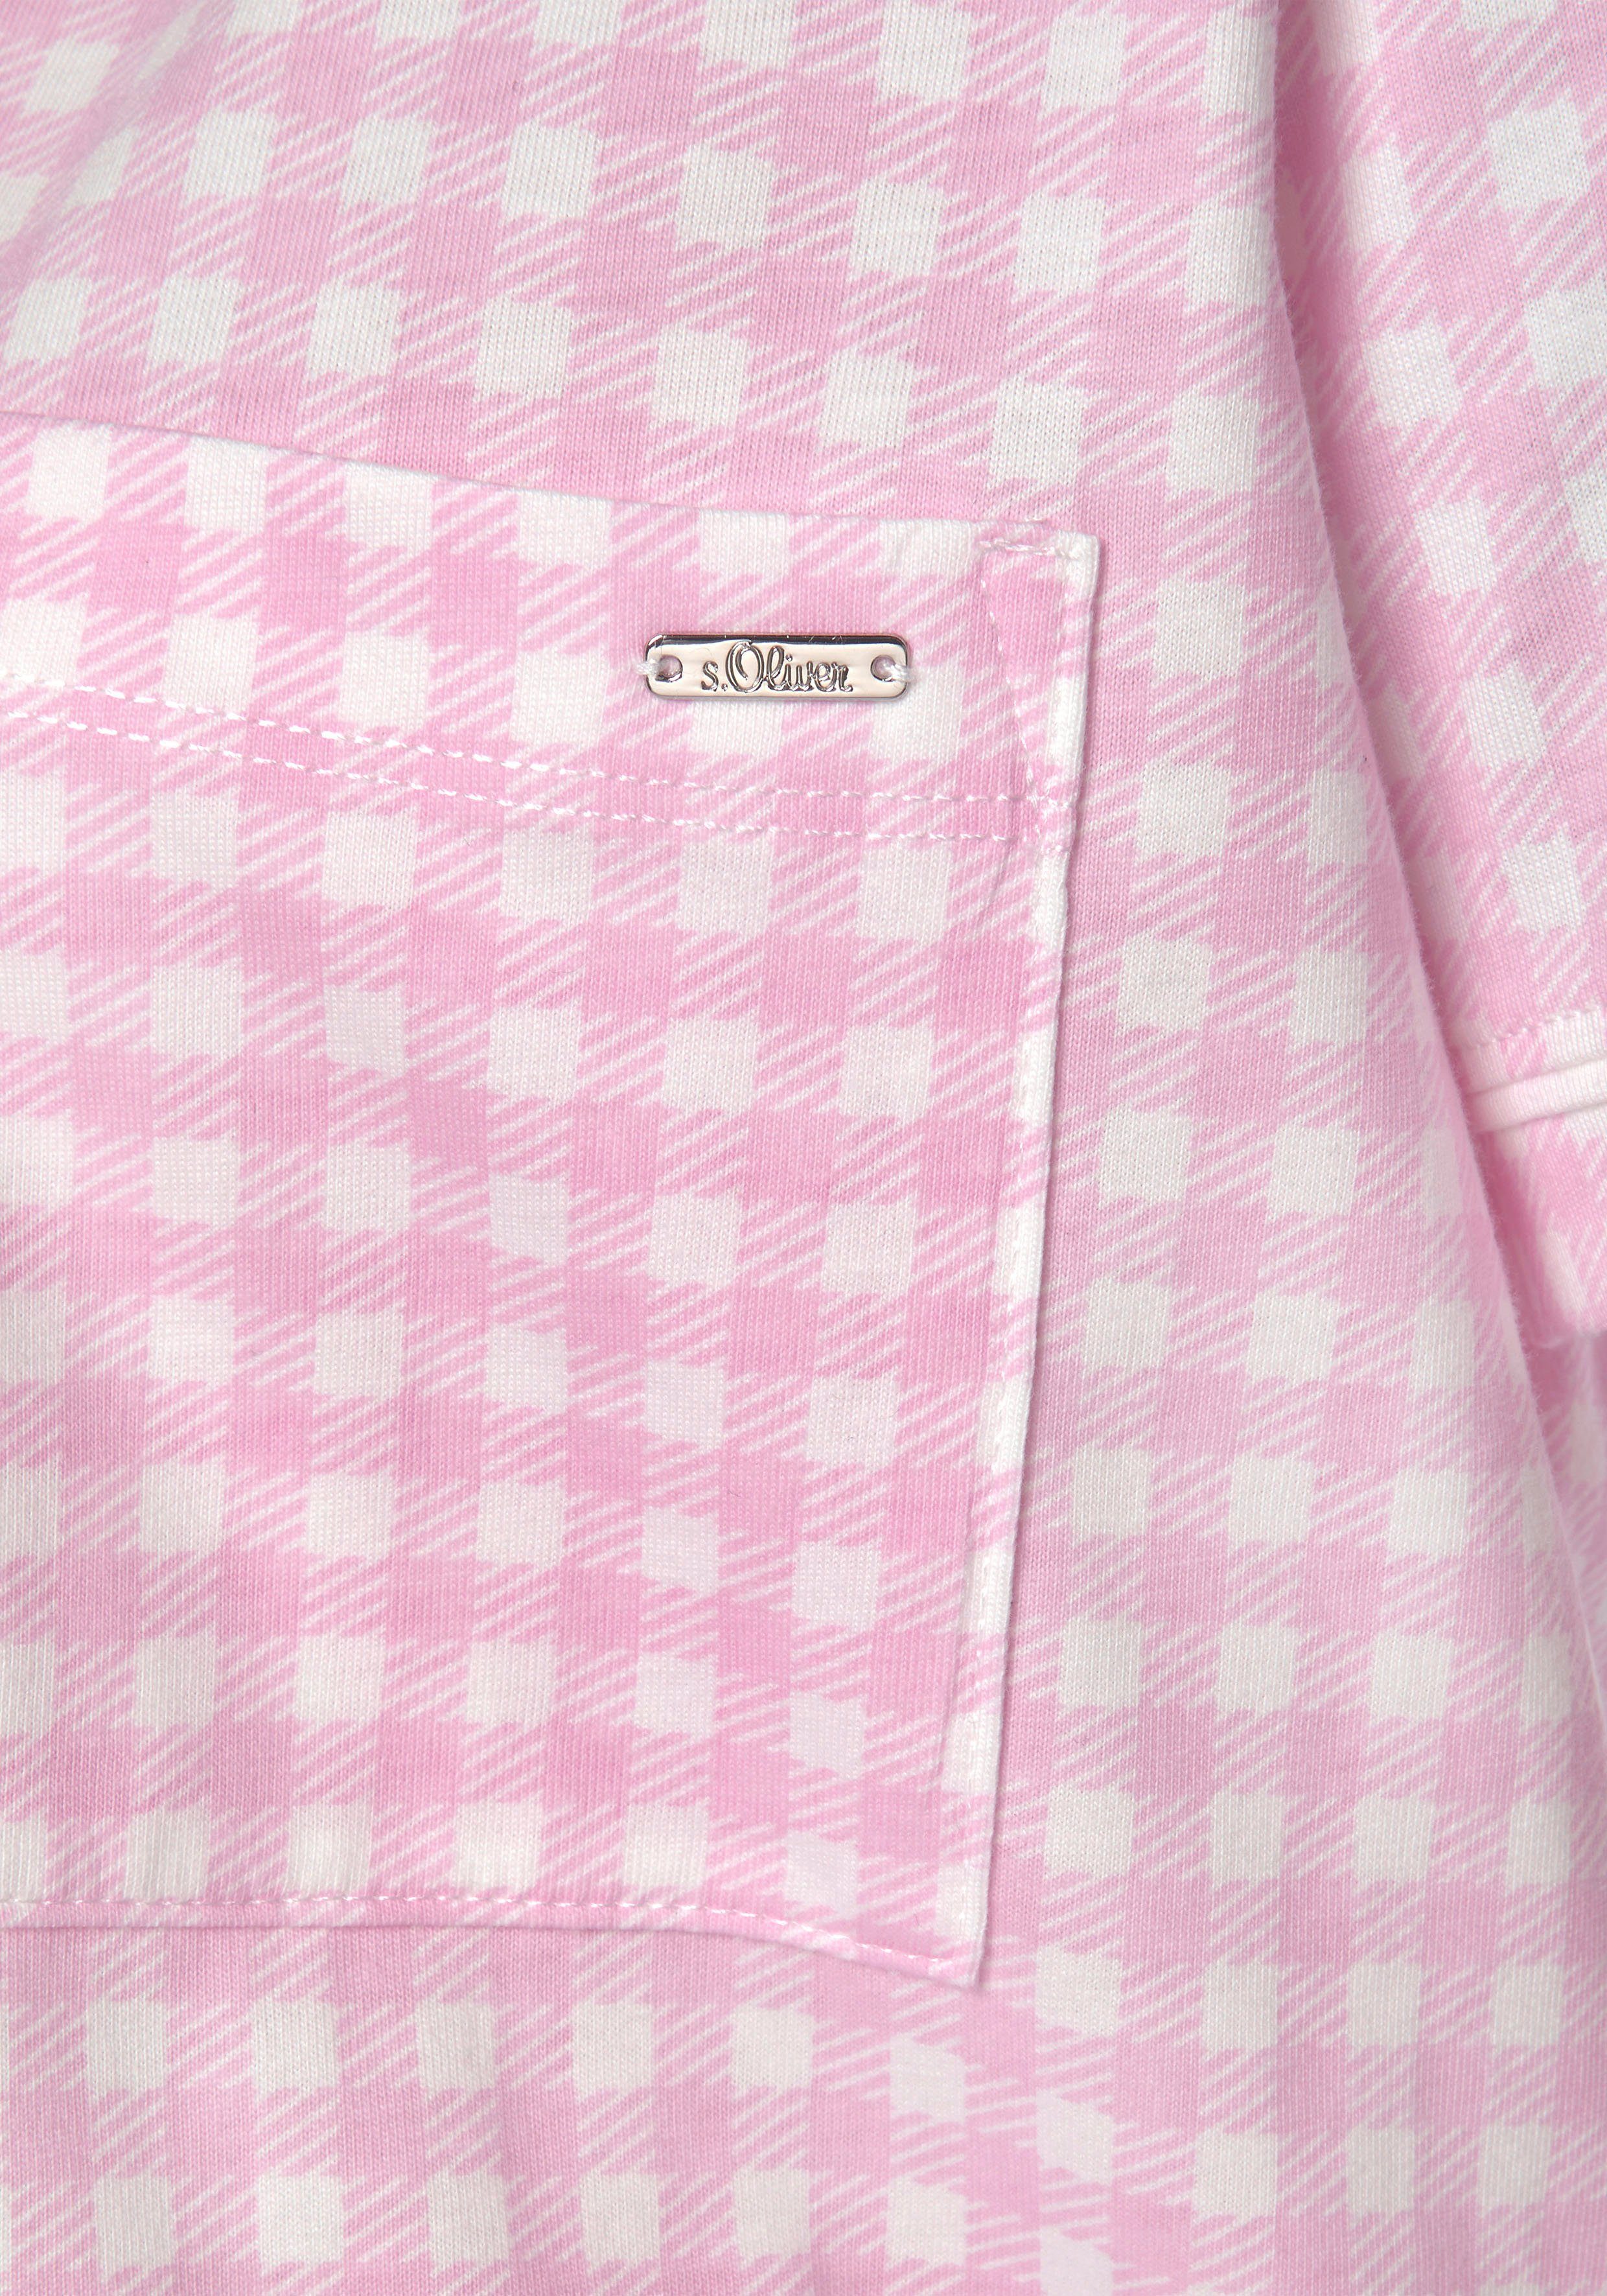 Brusttasche mit rosa-kariert Nachthemd aufgesetzter s.Oliver